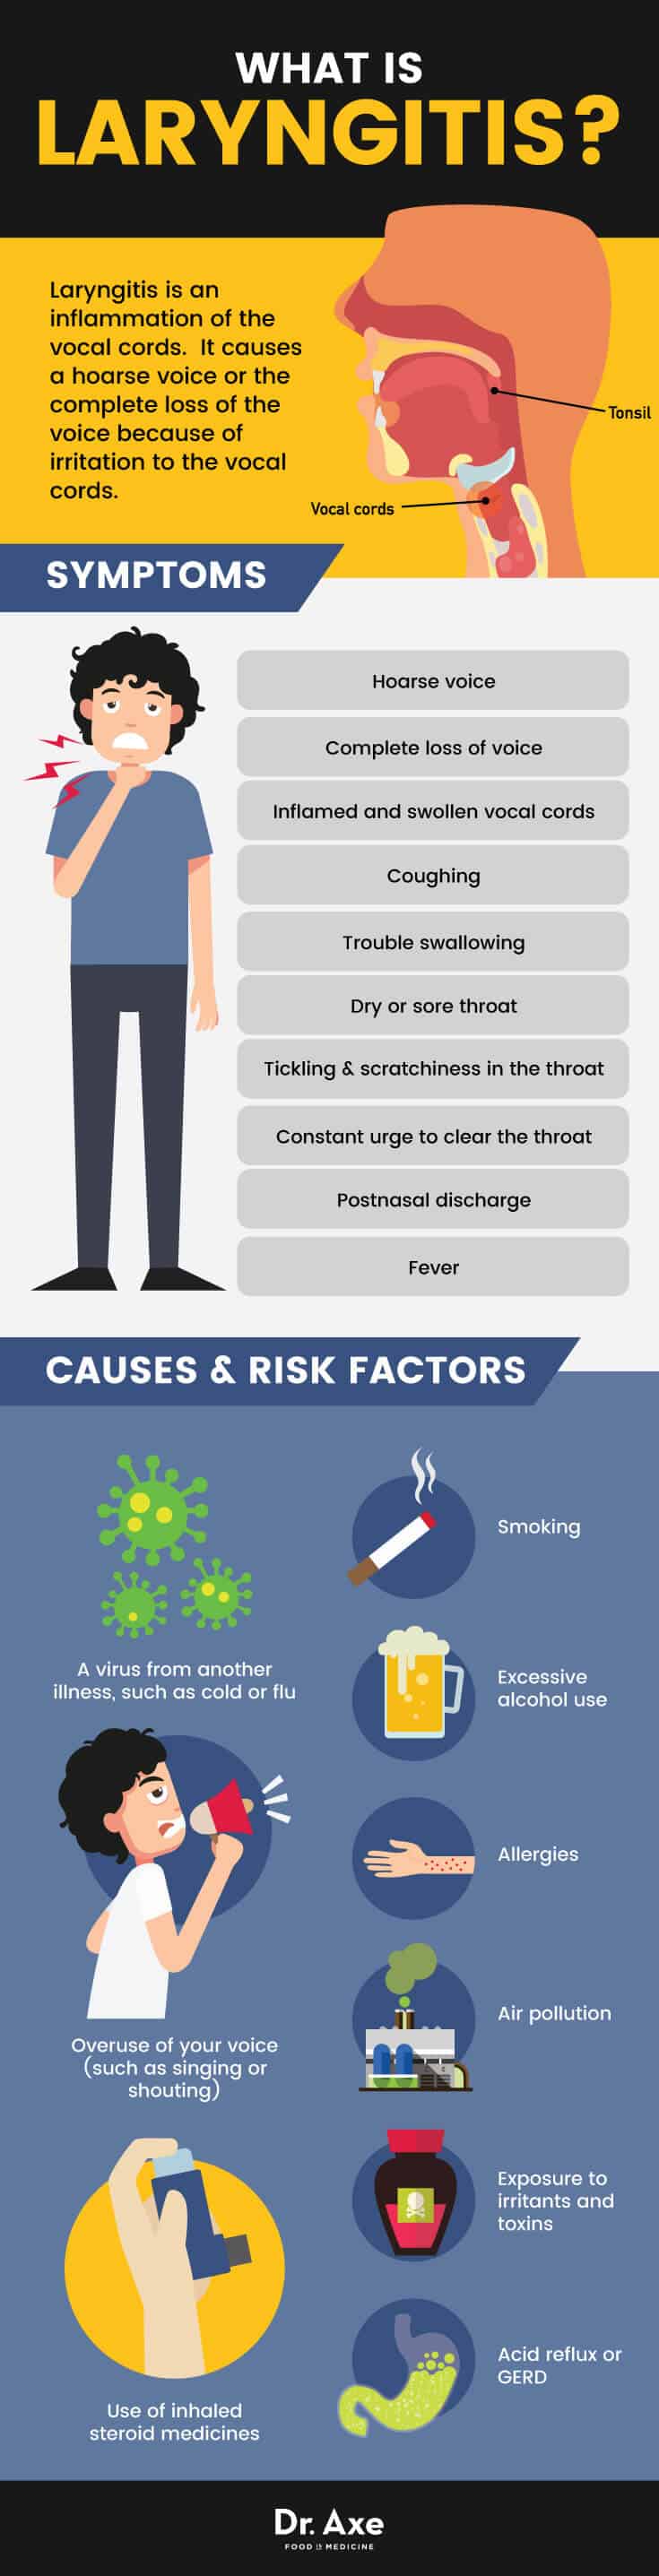 Laryngitis causes & risk factors